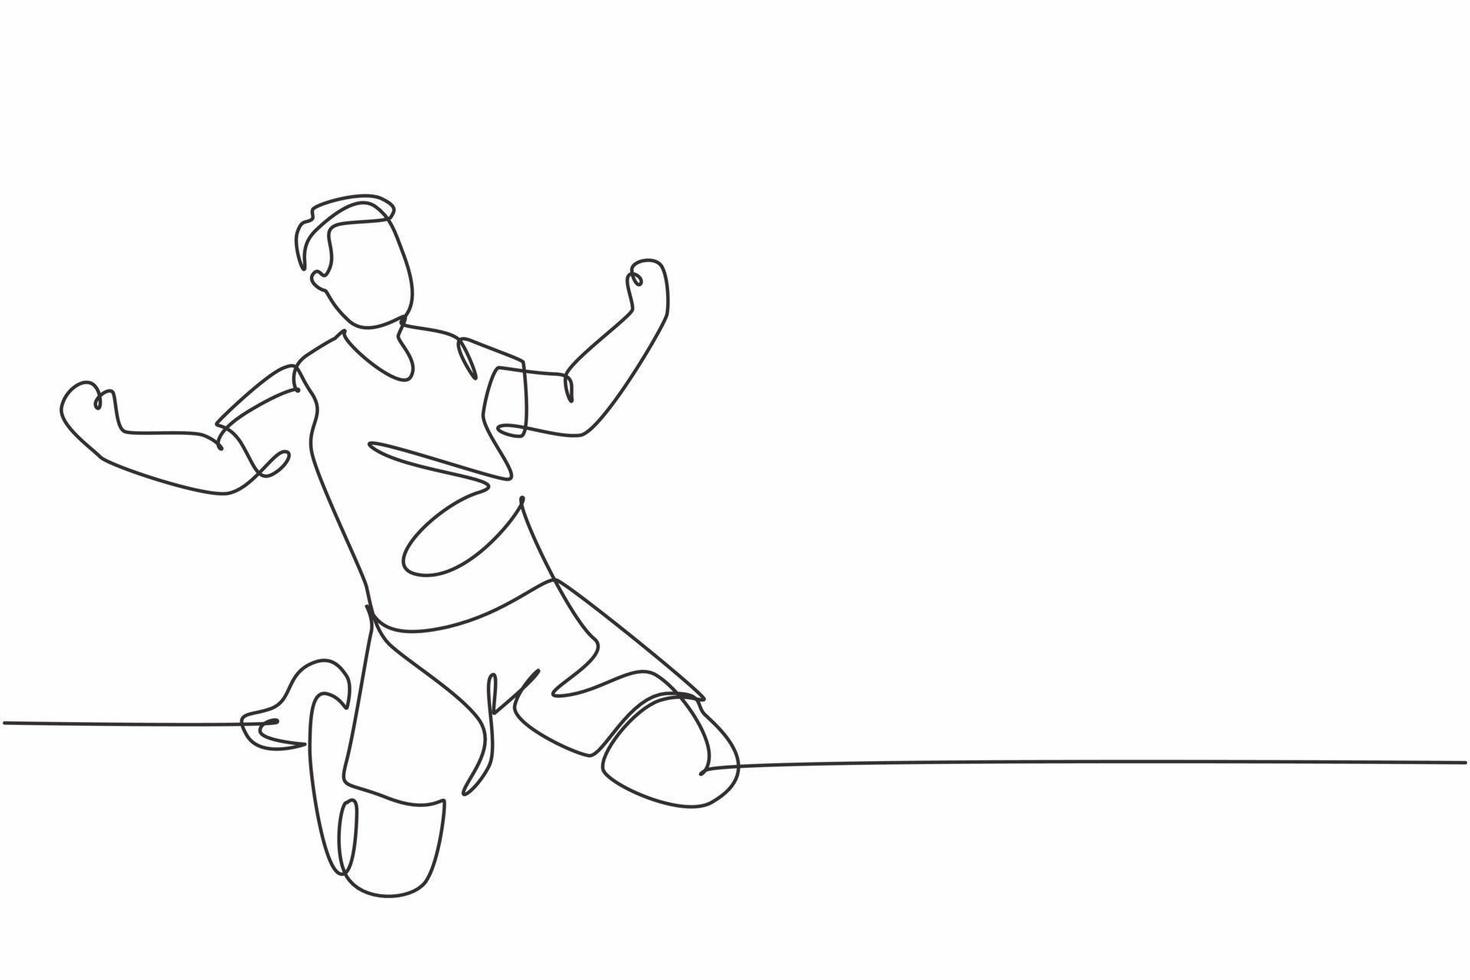 en enda radritning av den sportiga unga fotbollsspelaren som firar sitt mål med att göra mål på fältet känslomässigt på planen. match mål firande koncept kontinuerlig linje rita design vektor illustration